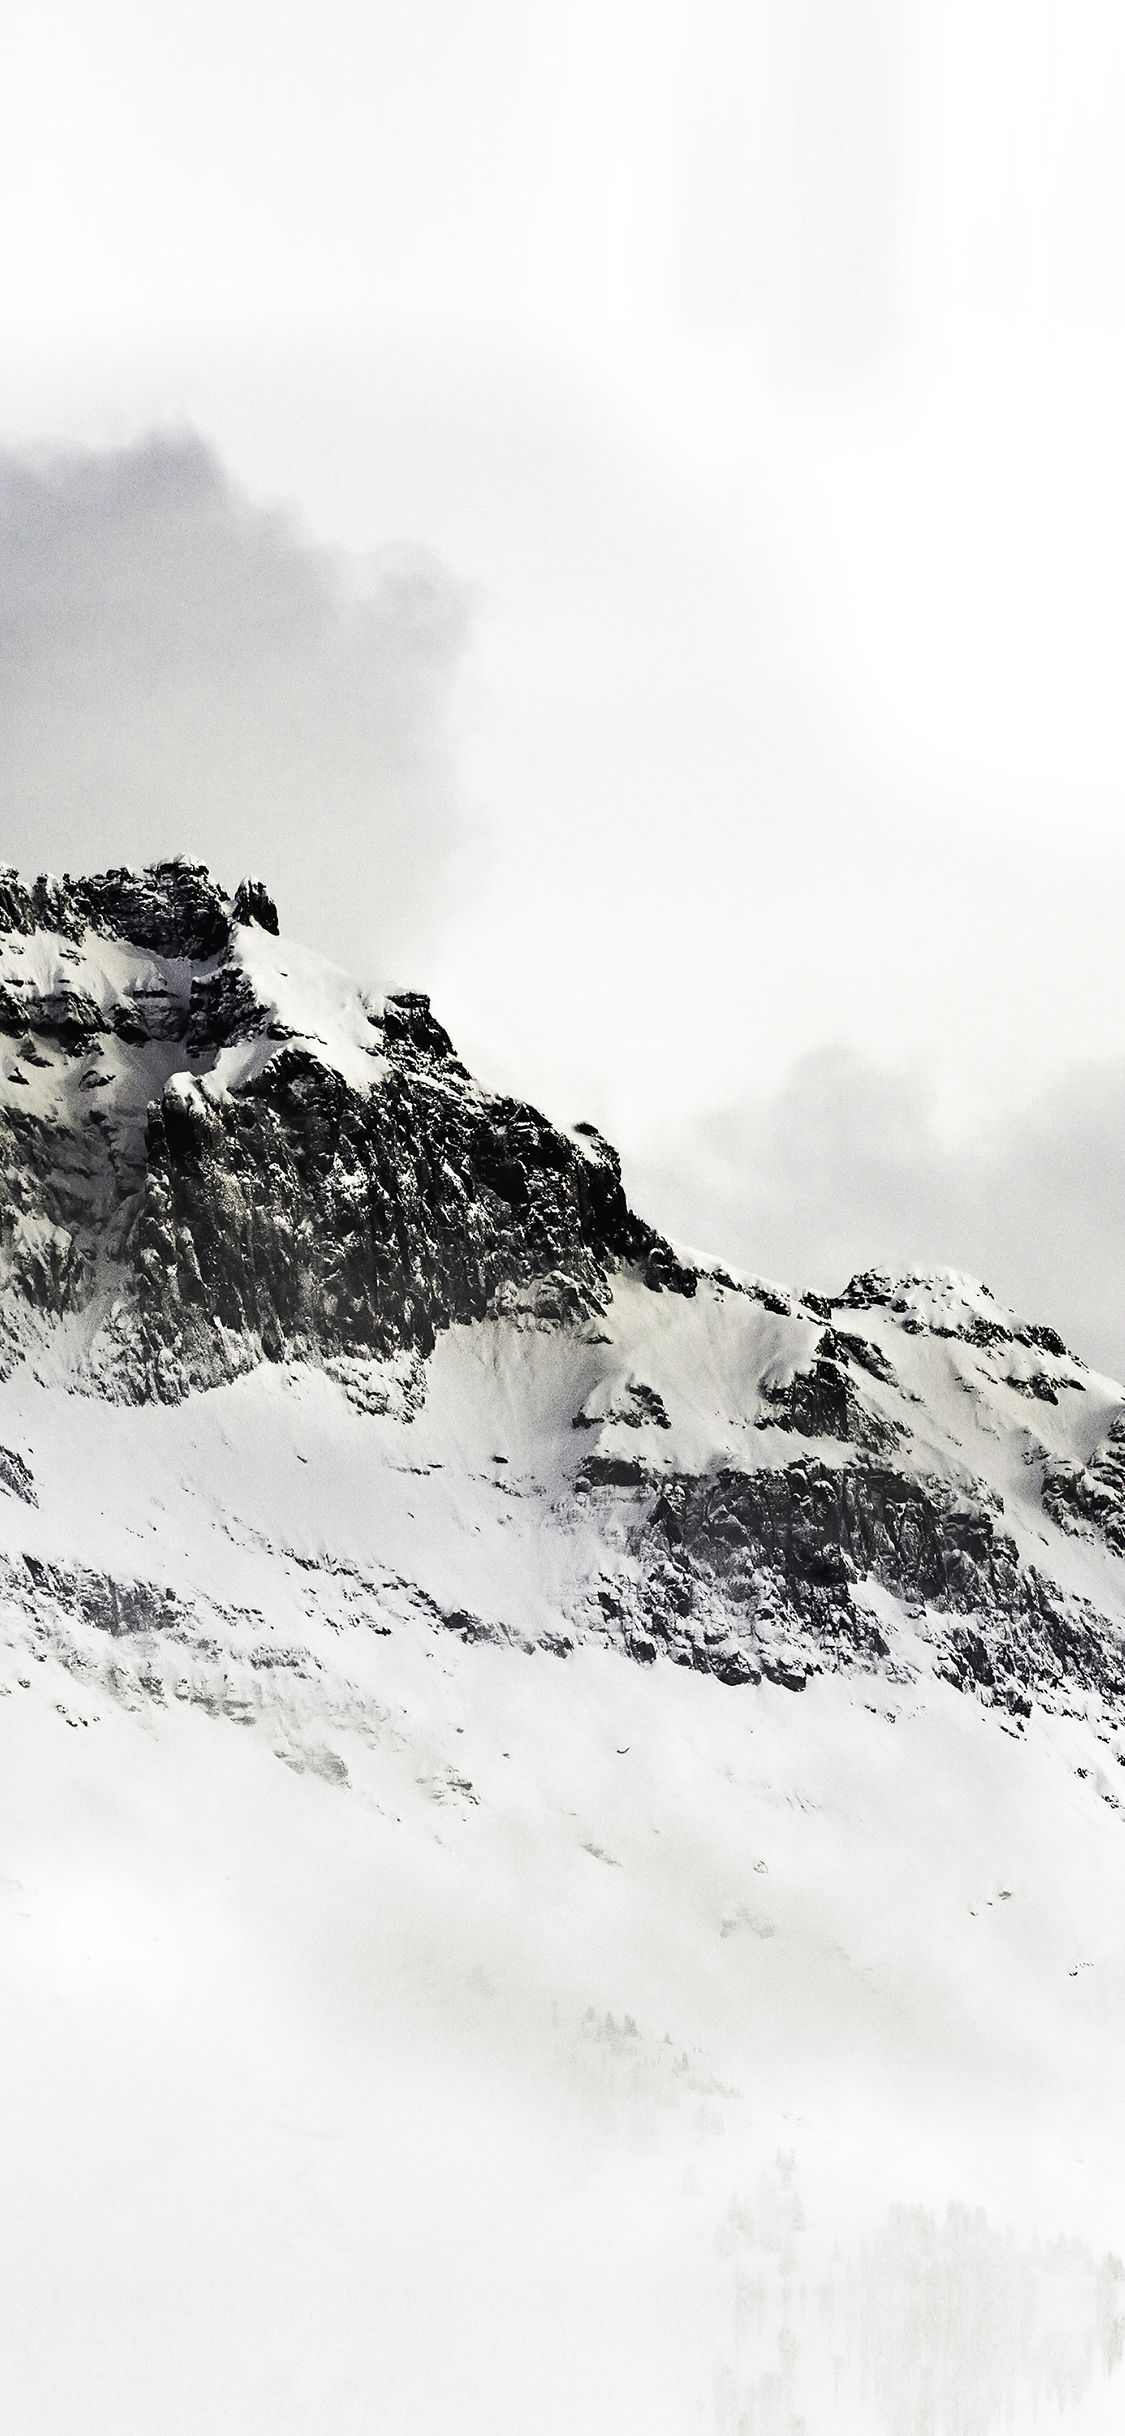 iPhone wallpaper. mountain white snow winter minimal